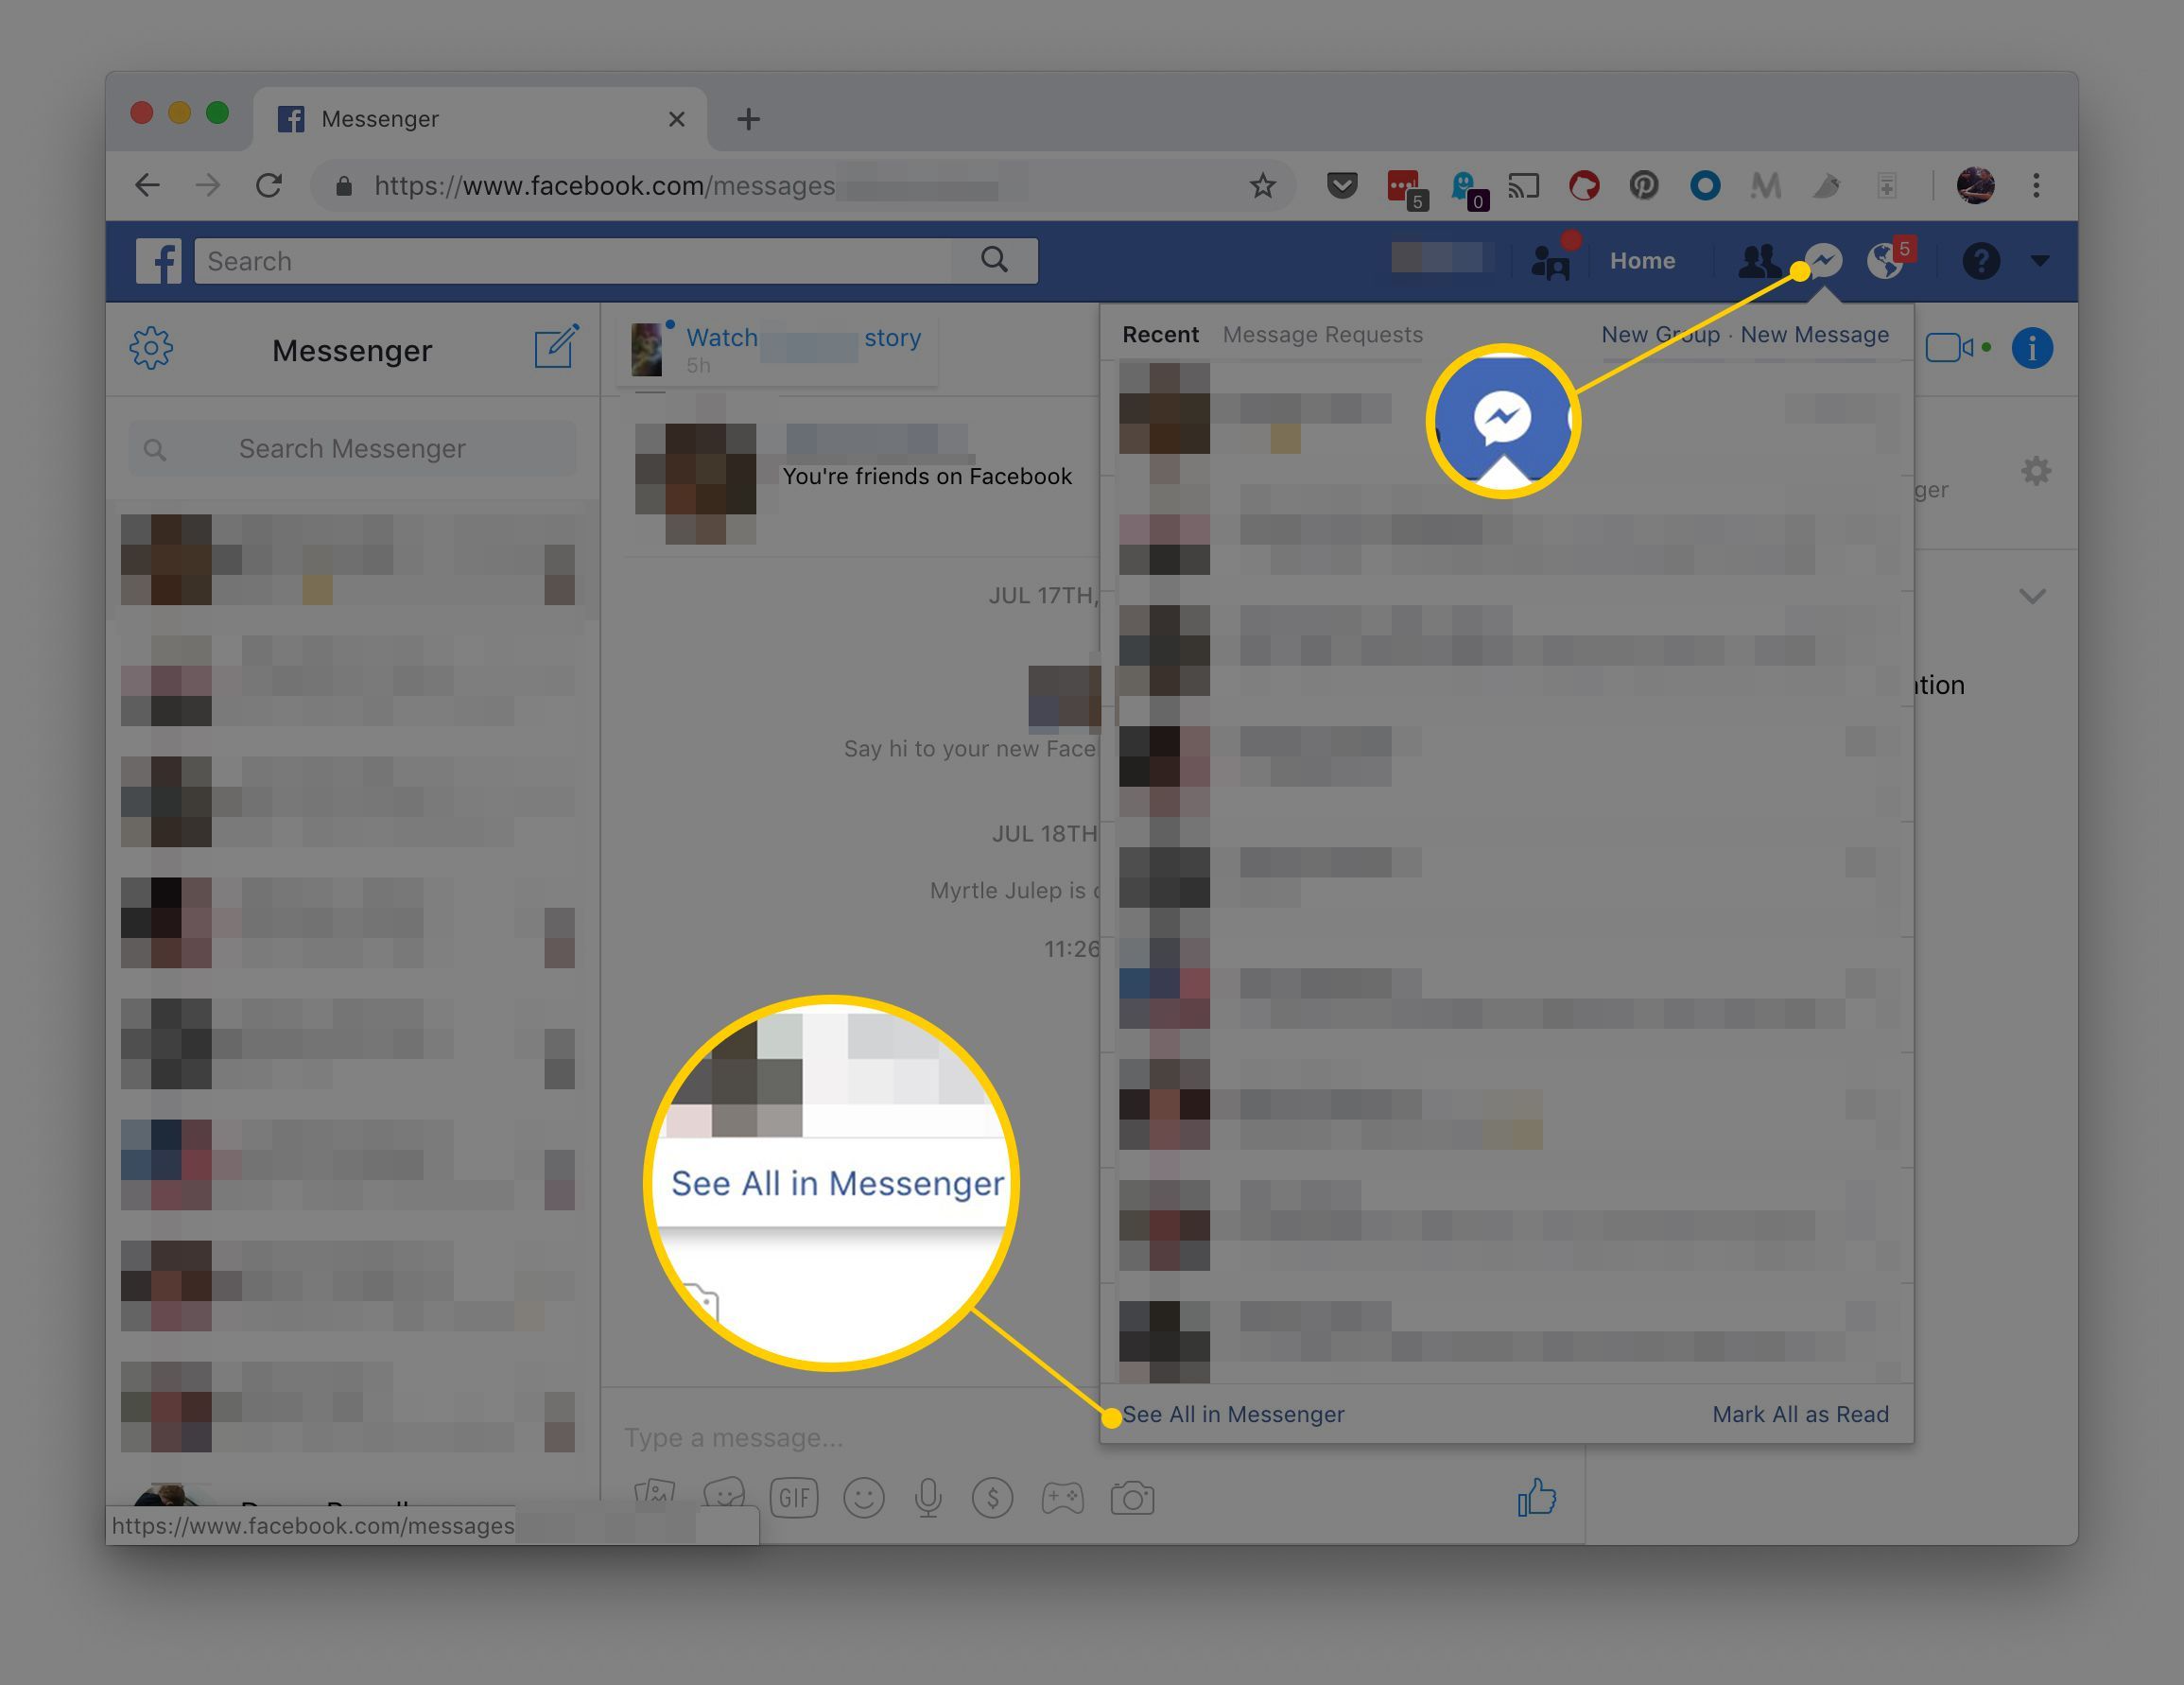 Снимок экрана кнопки Messenger на Facebook через Интернет, показывающий